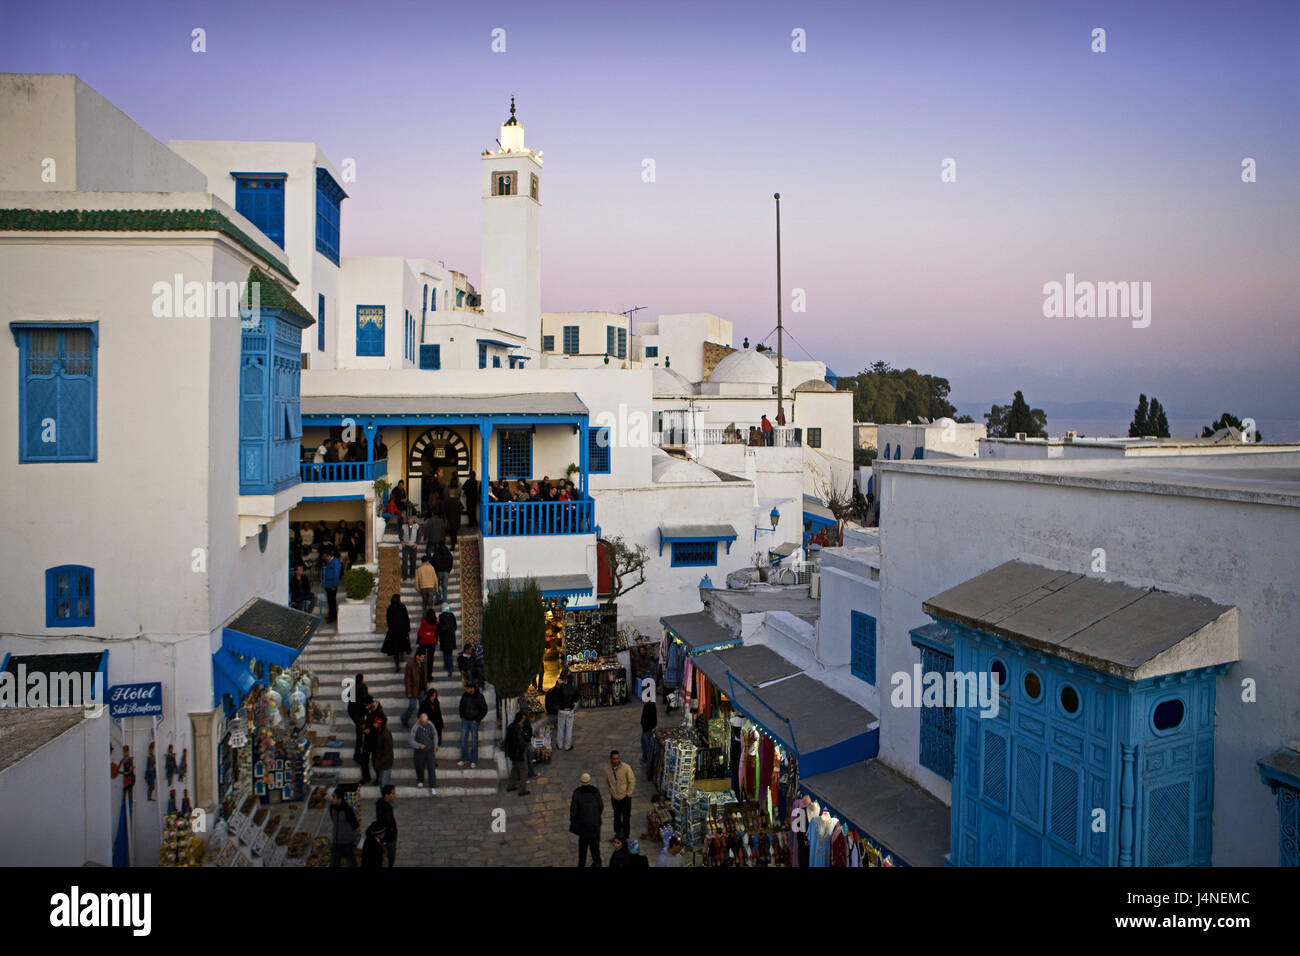 La Tunisia, Sidi Bou Said, café di Nattes, turistico, crepuscolo, Nord Africa, luogo dell'artista, villaggio posto turistico, destinazione, luogo di interesse turistico, bar, cafe, scale, persona, gli ospiti, sera, Foto Stock